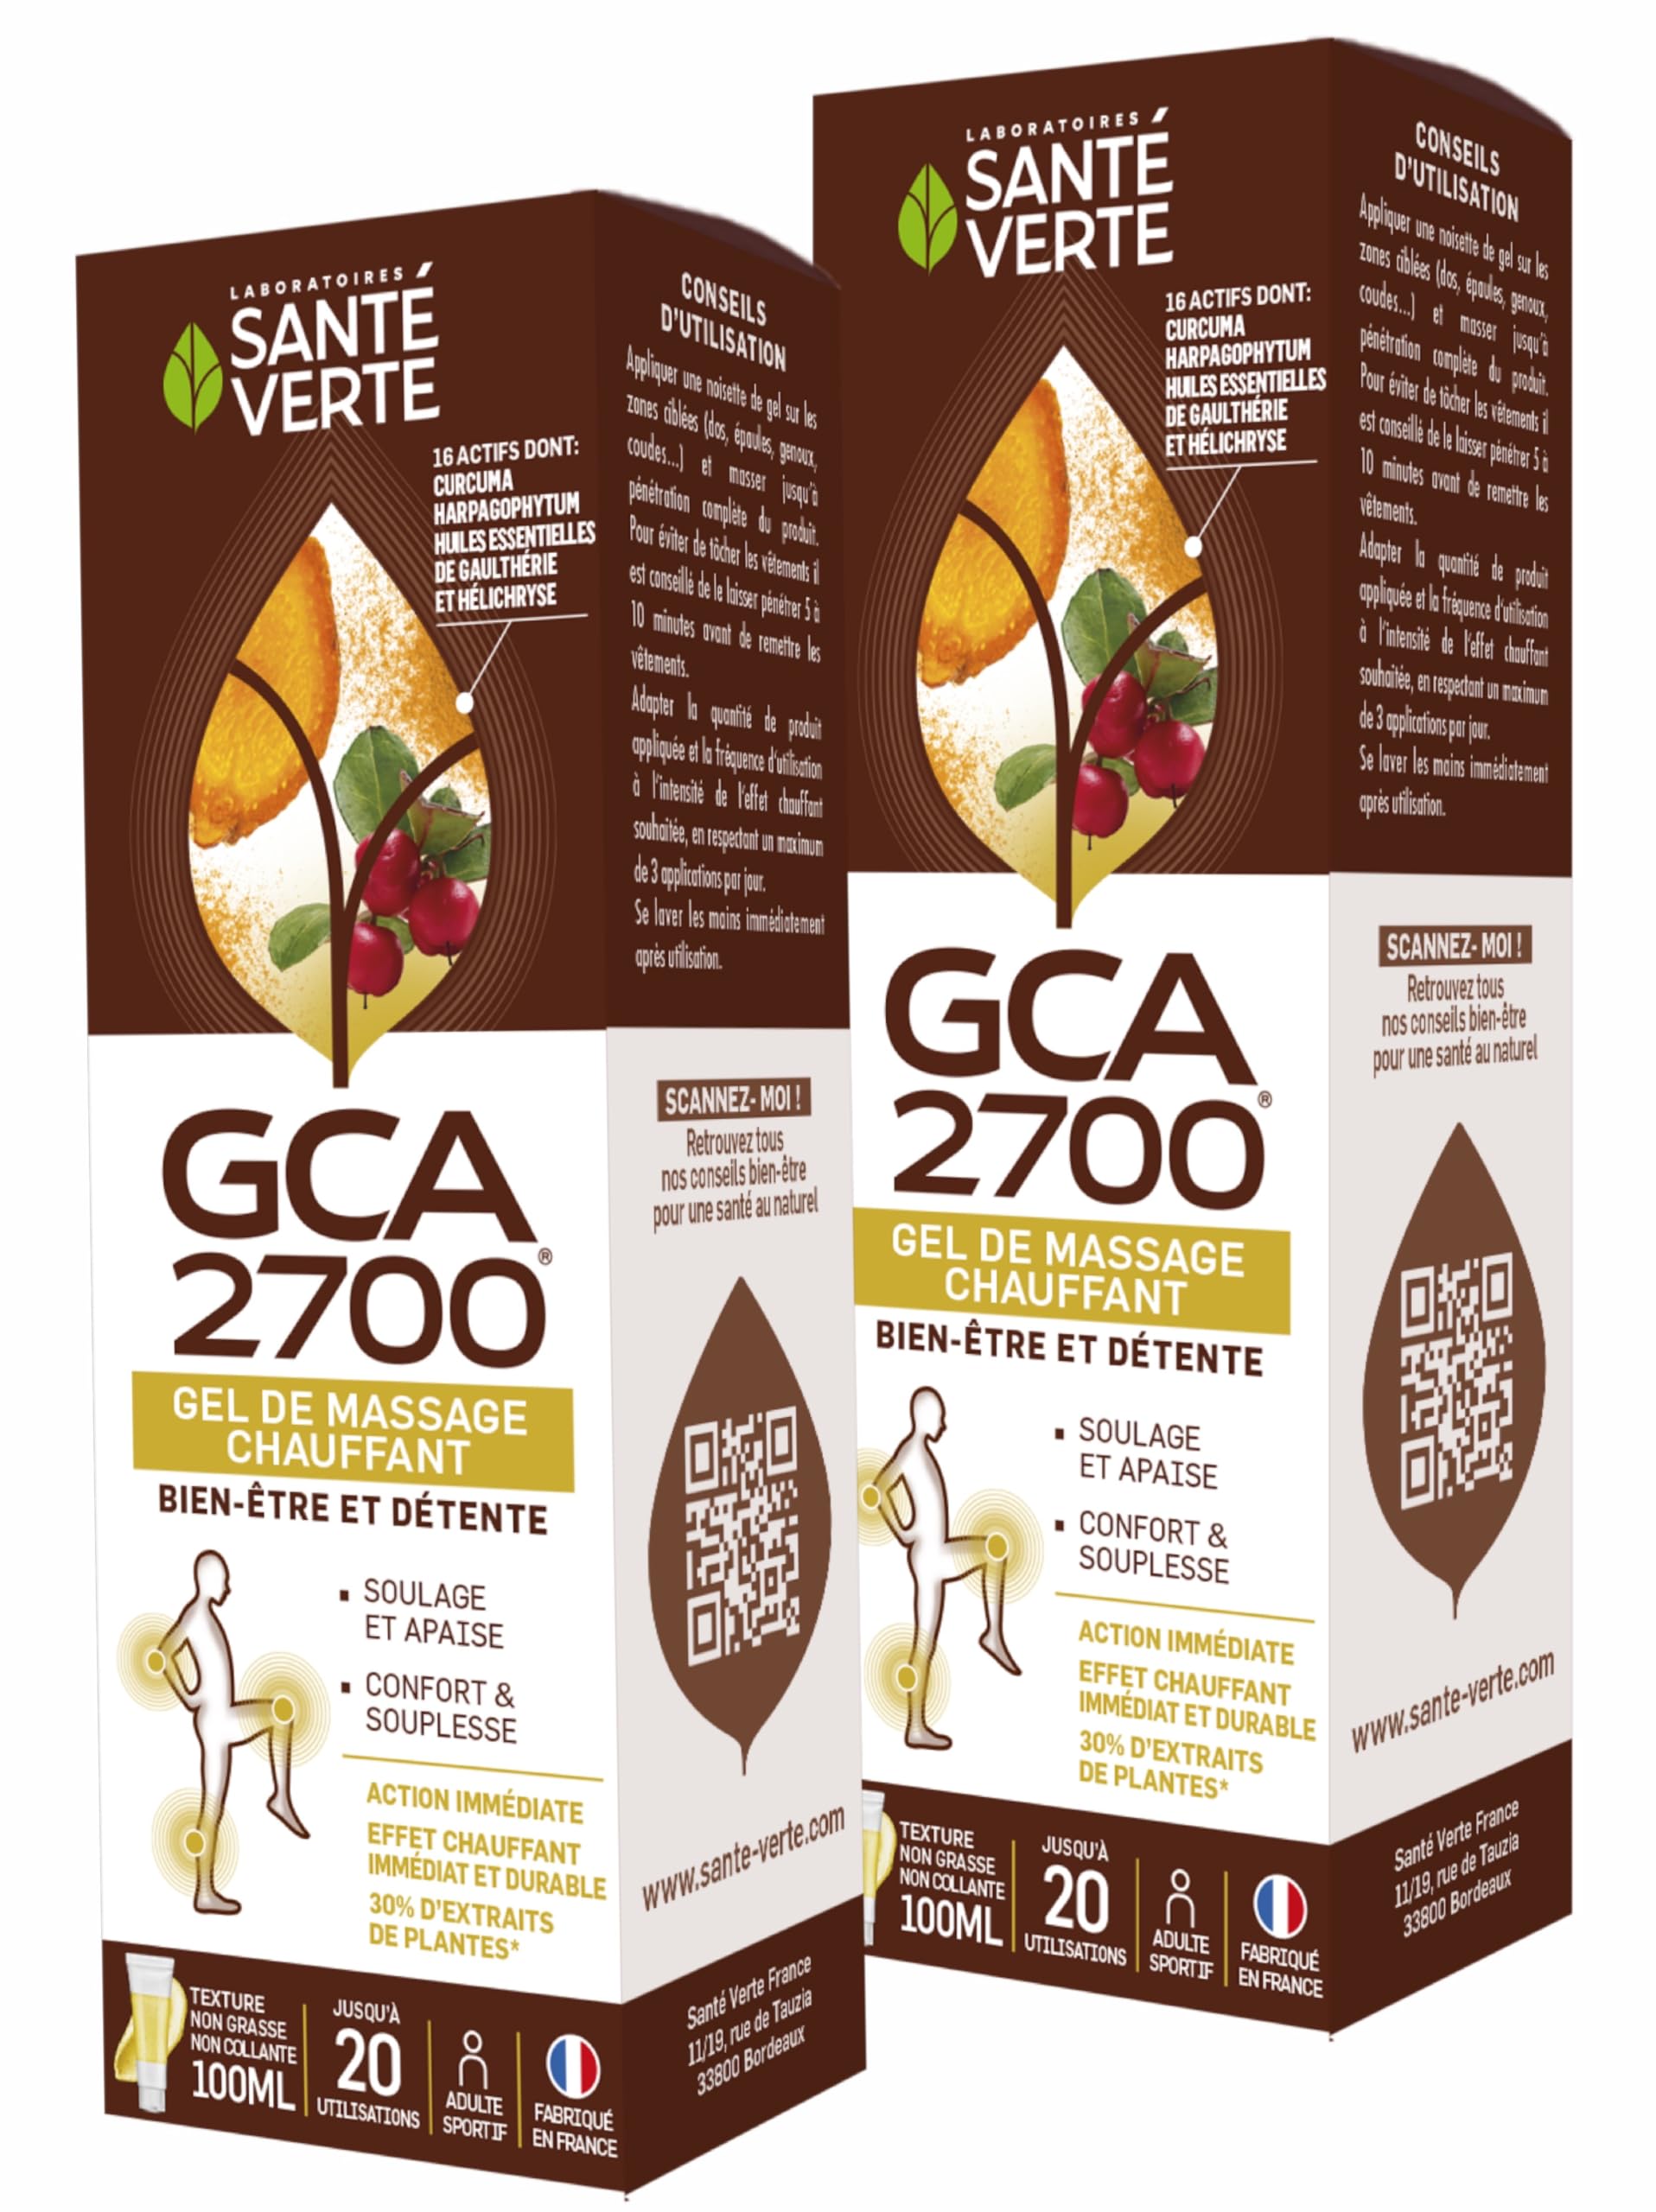 GCA 2700 Gel – Heizgel mit 16 gezielten Wirkstoffen, einschließlich Harpagophytum, Hélichryse und Gaulthérie, 2 Tuben à 100 ml